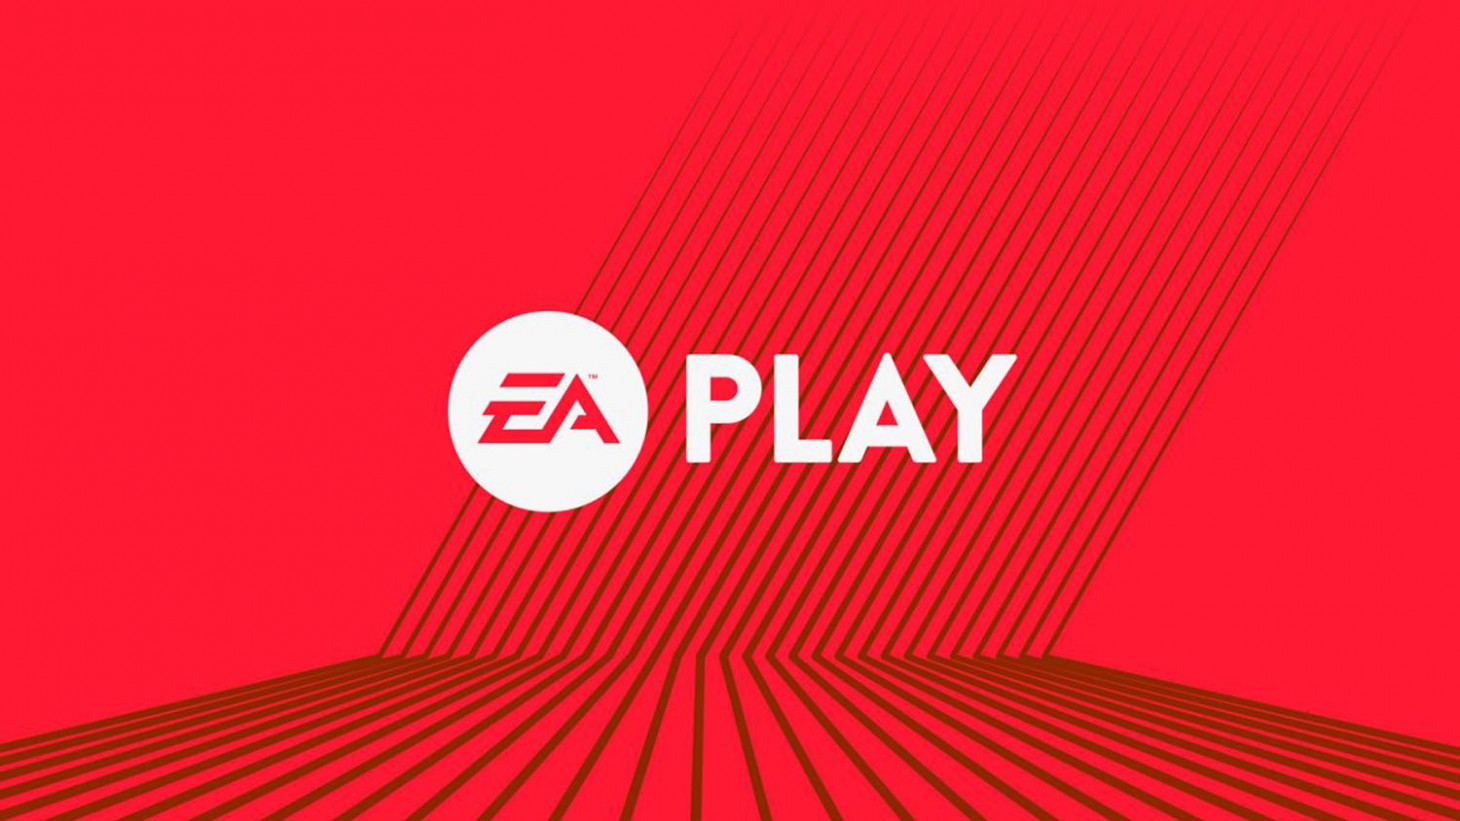 EA Play logo